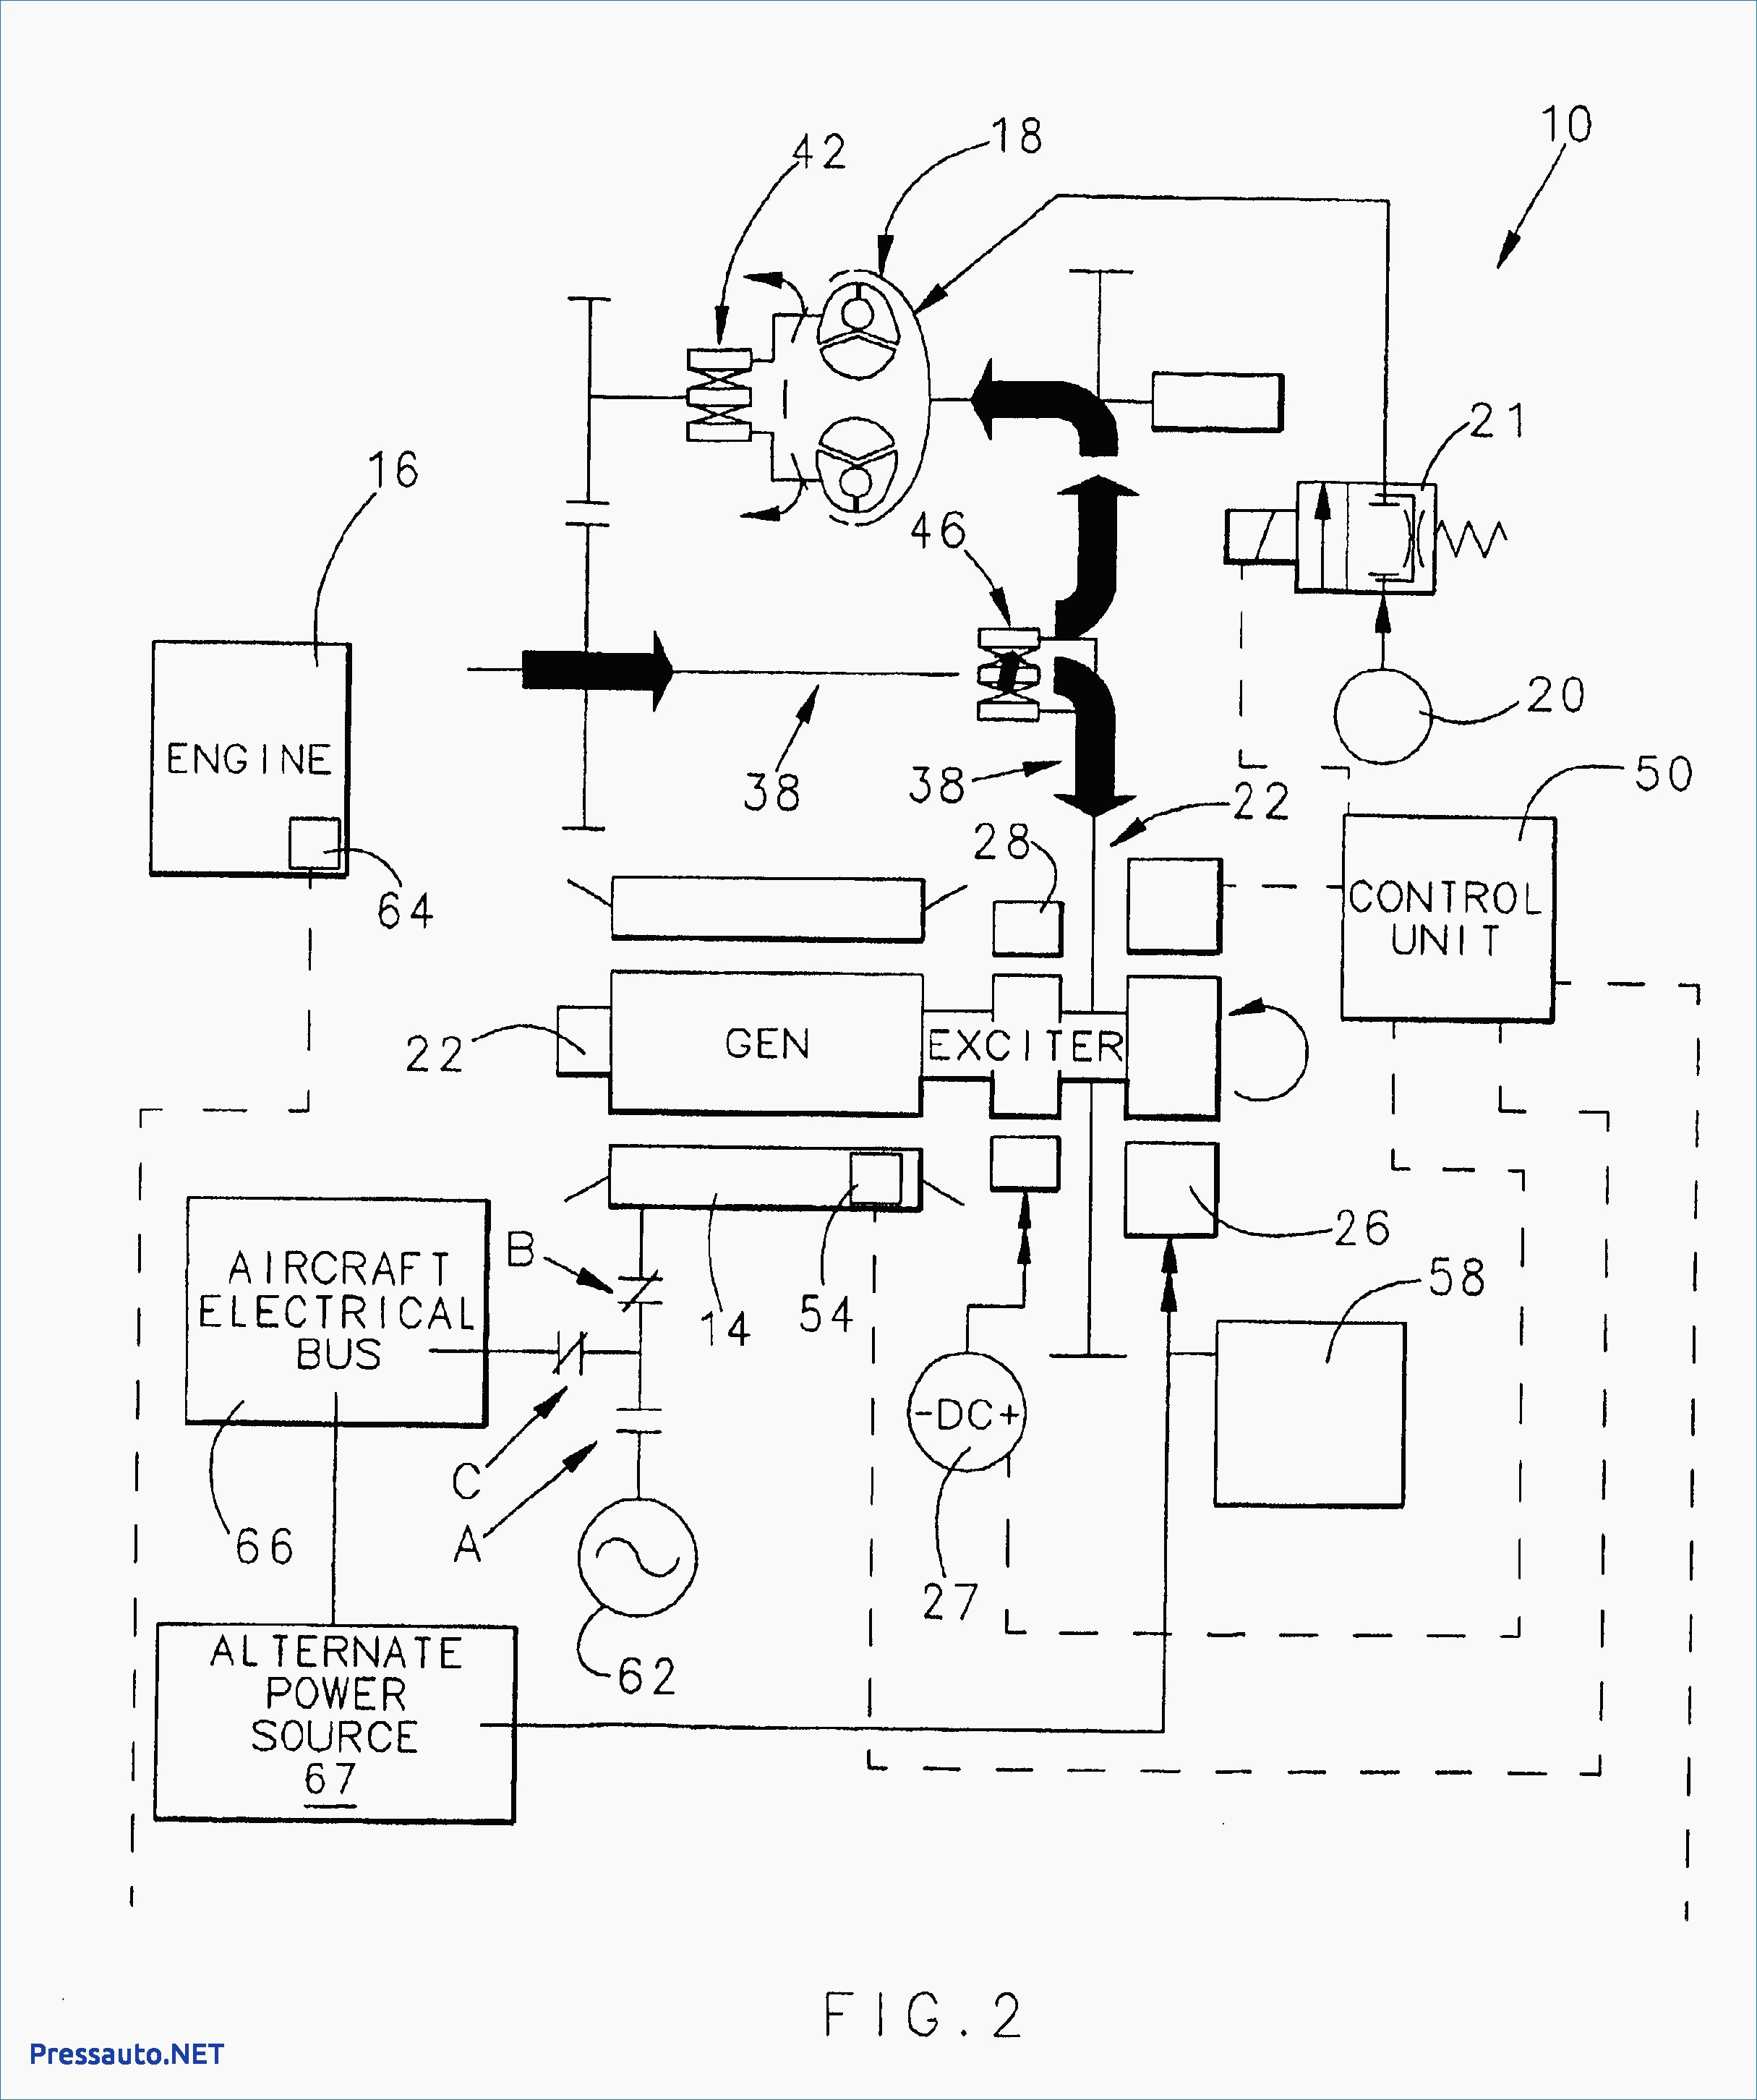 2007 Chrysler Pacifica Engine Diagram Chrysler Pacifica Alternator Wiring Diagram Wiring Diagram •